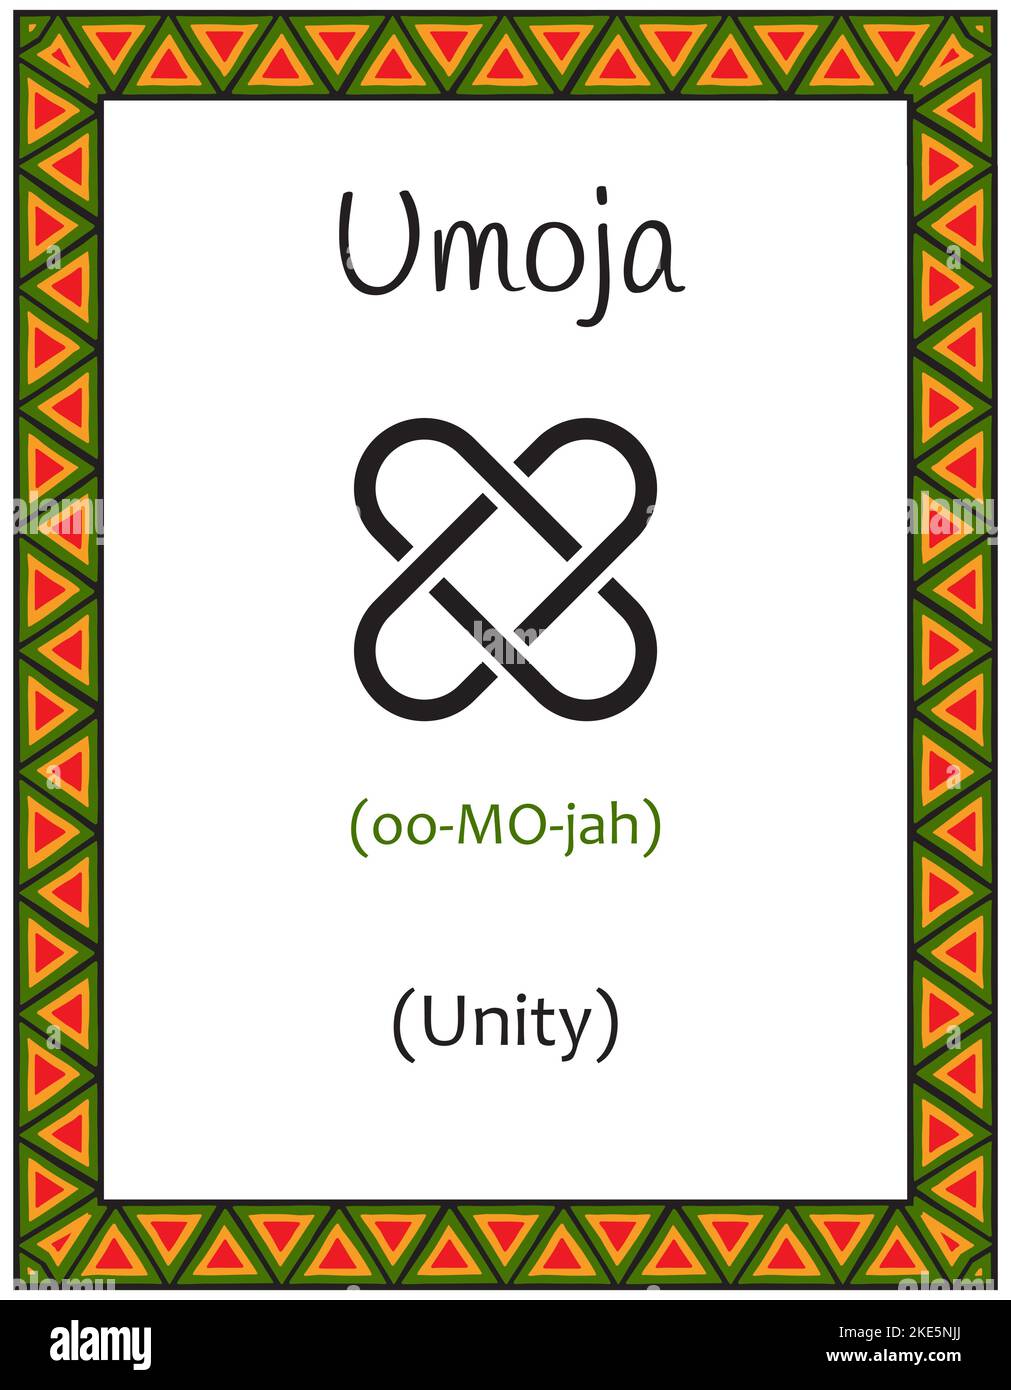 Una carta con uno dei principi Kwanzaa. Simbolo Umoja significa unità in Swahili. Poster con segno e descrizione. Modello etnico africano nella tradizione Illustrazione Vettoriale